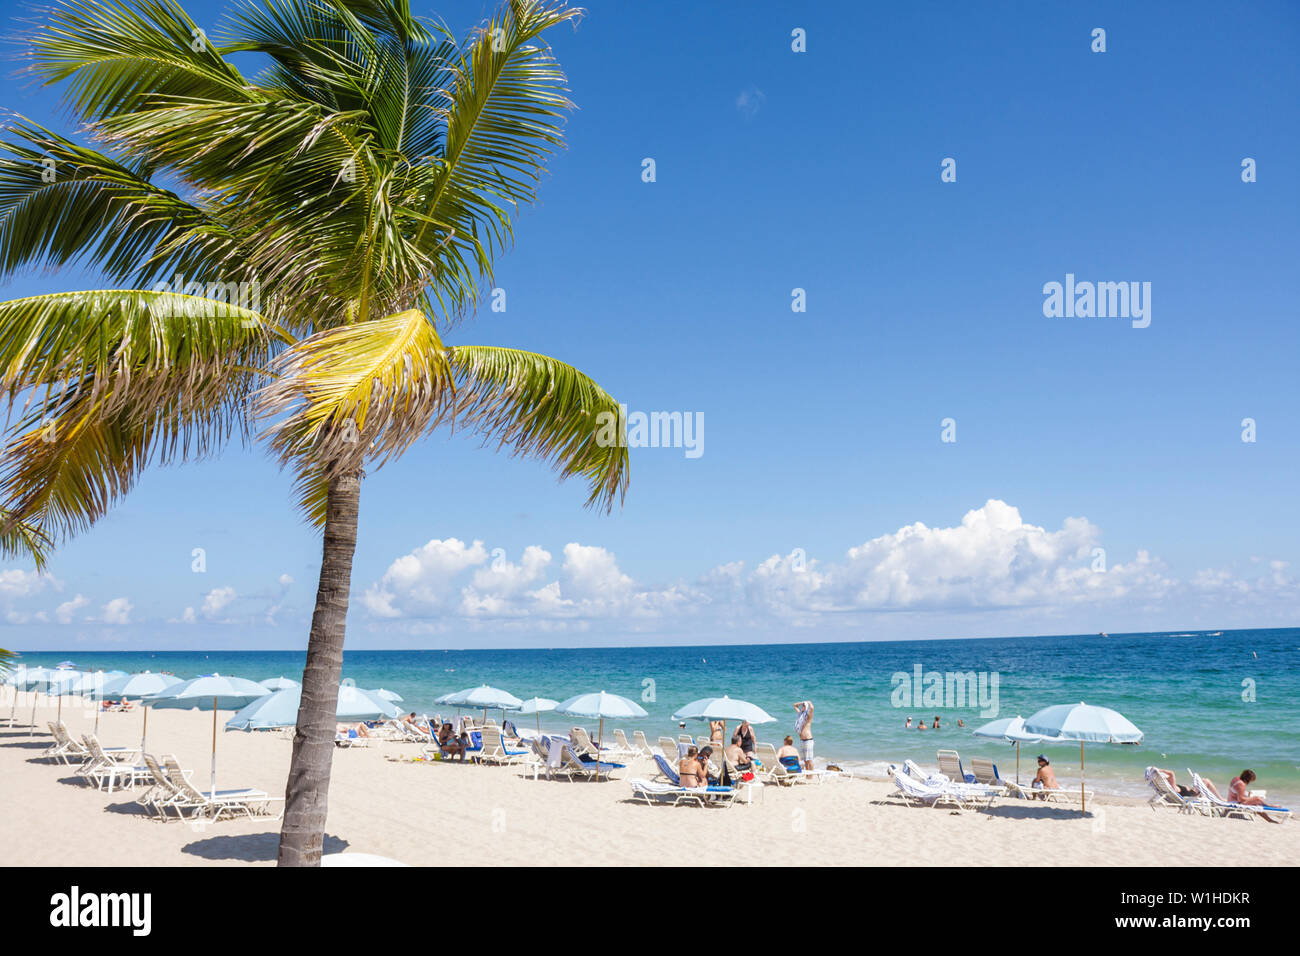 Fort Ft. Lauderdale Florida Beach, North Atlantic Avenue, A1A, playa pública, palmeras, sombrilla, chaise longue, océano, costa, arena, ocio, surf, FL091010103 Foto de stock